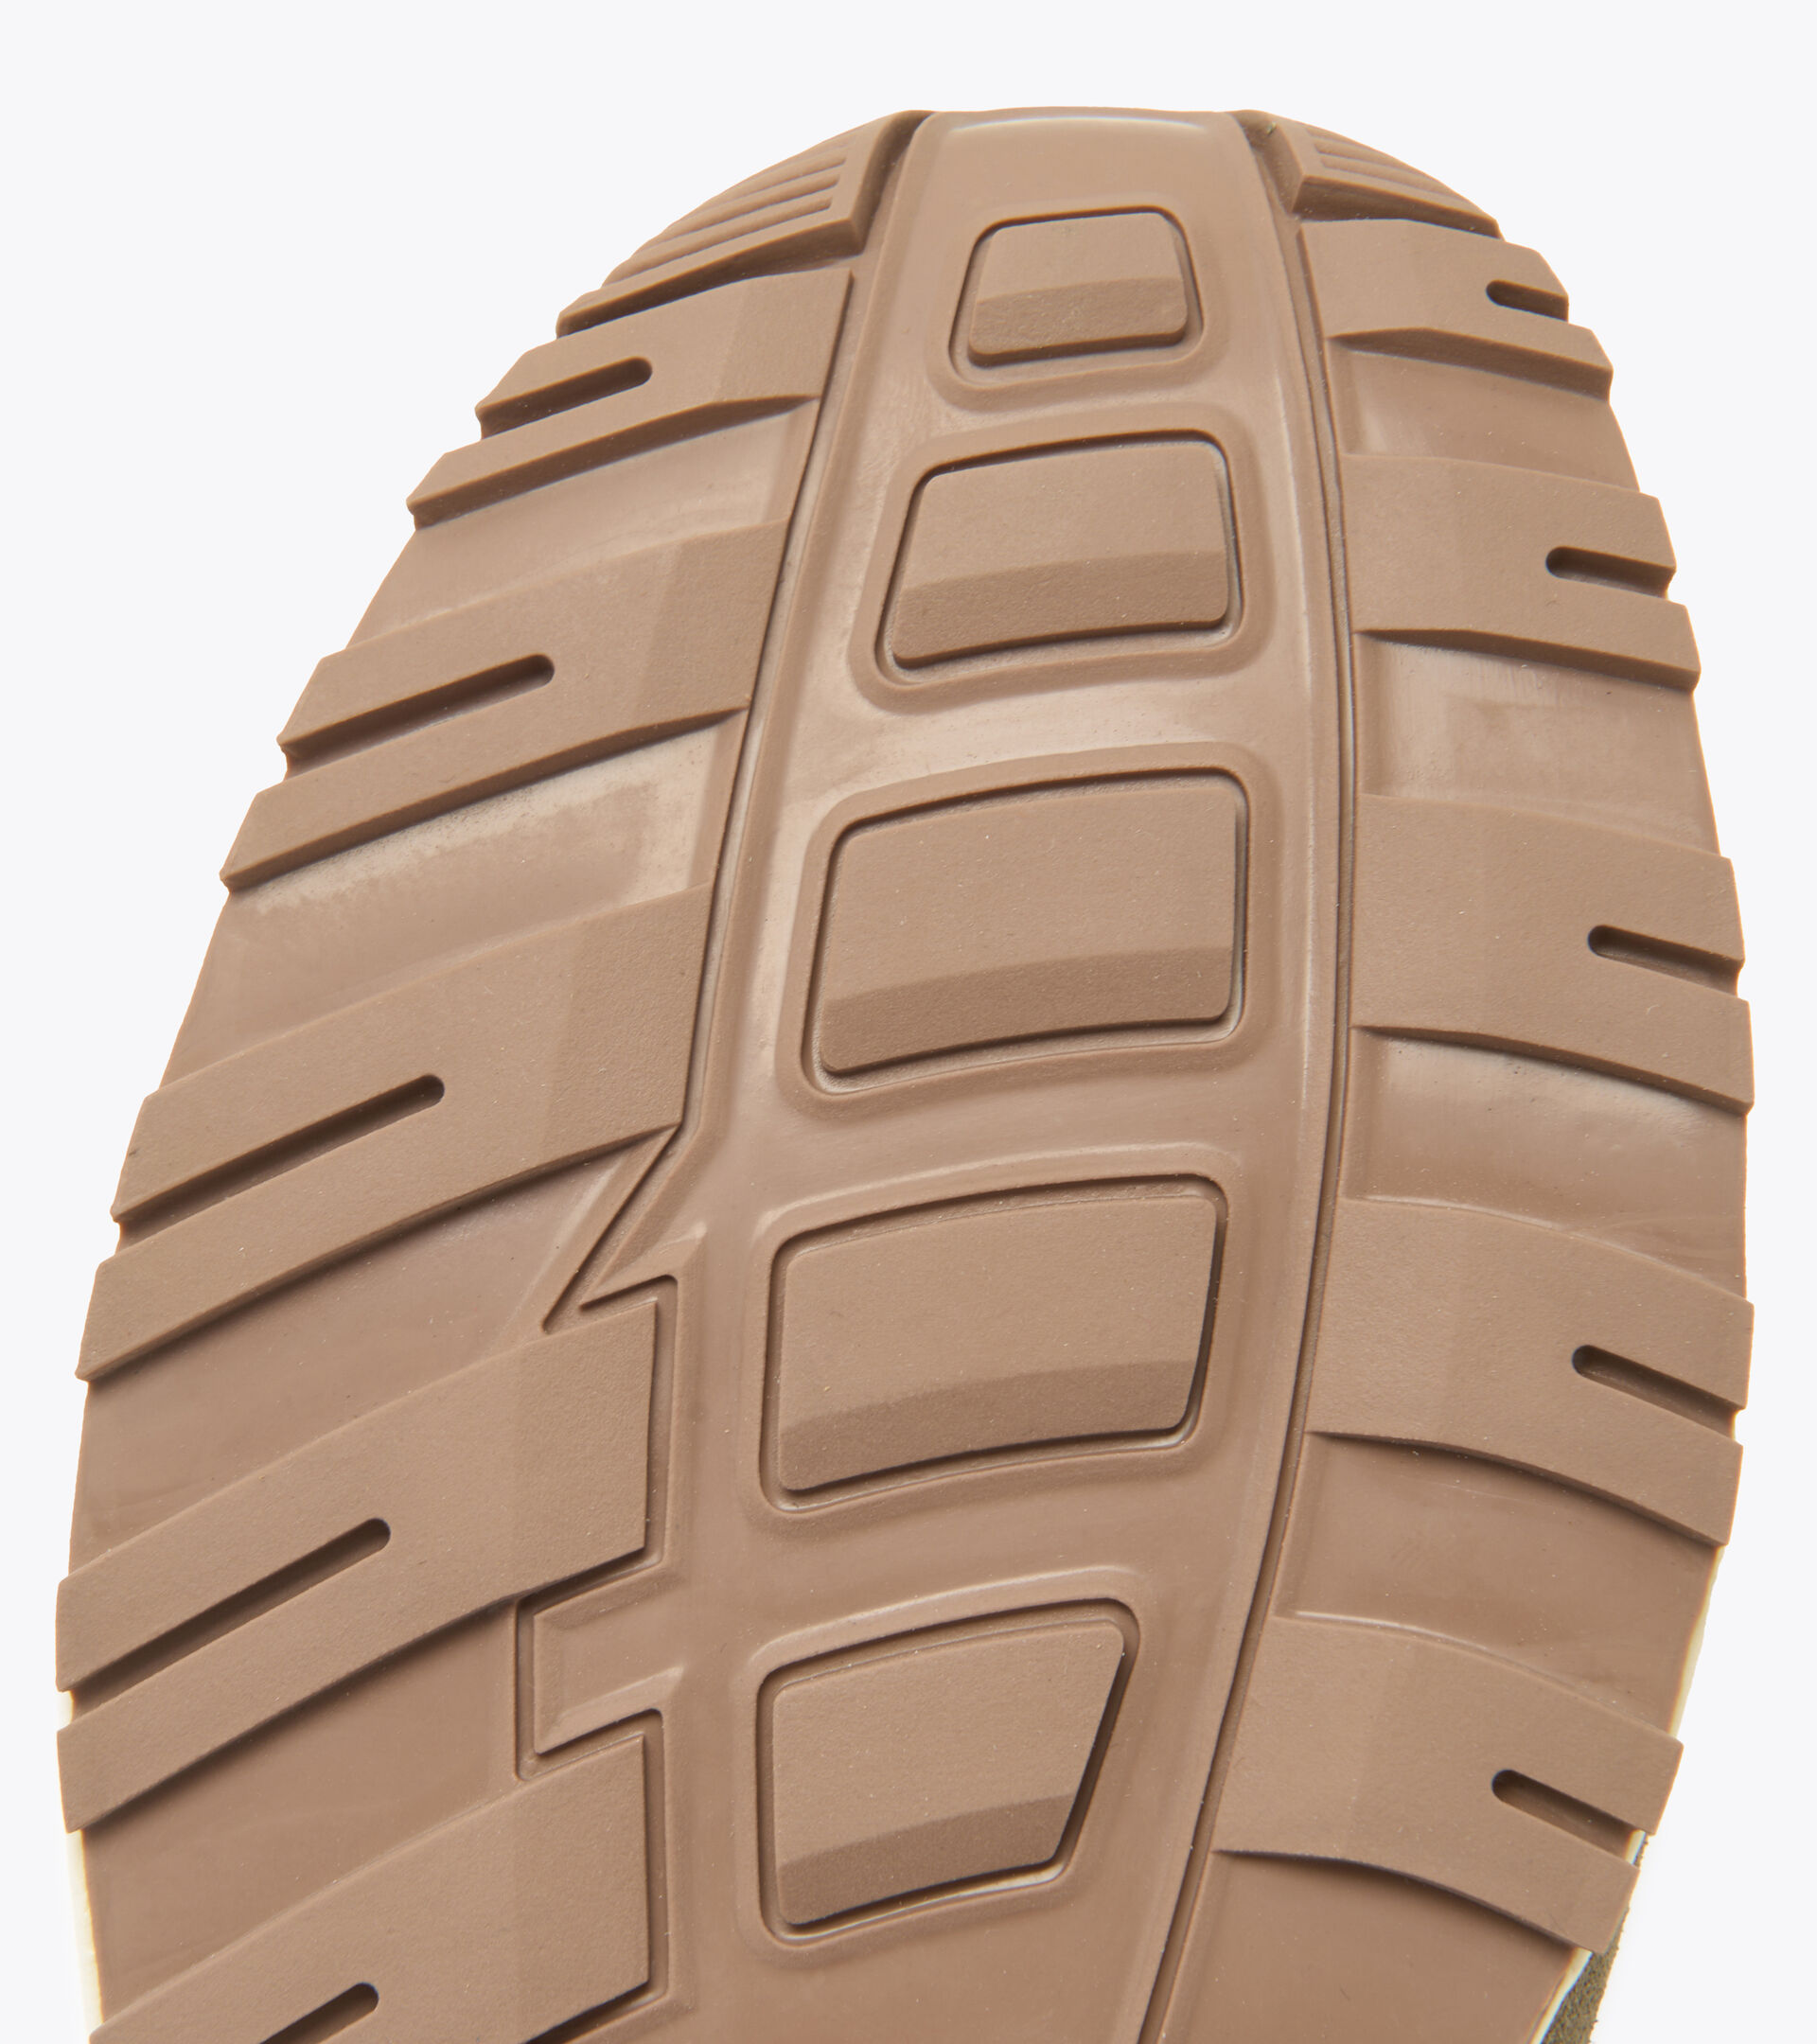 Zapatillas deportivas - Unisex N902 BERRENDO/OXFORD DORADO - Diadora